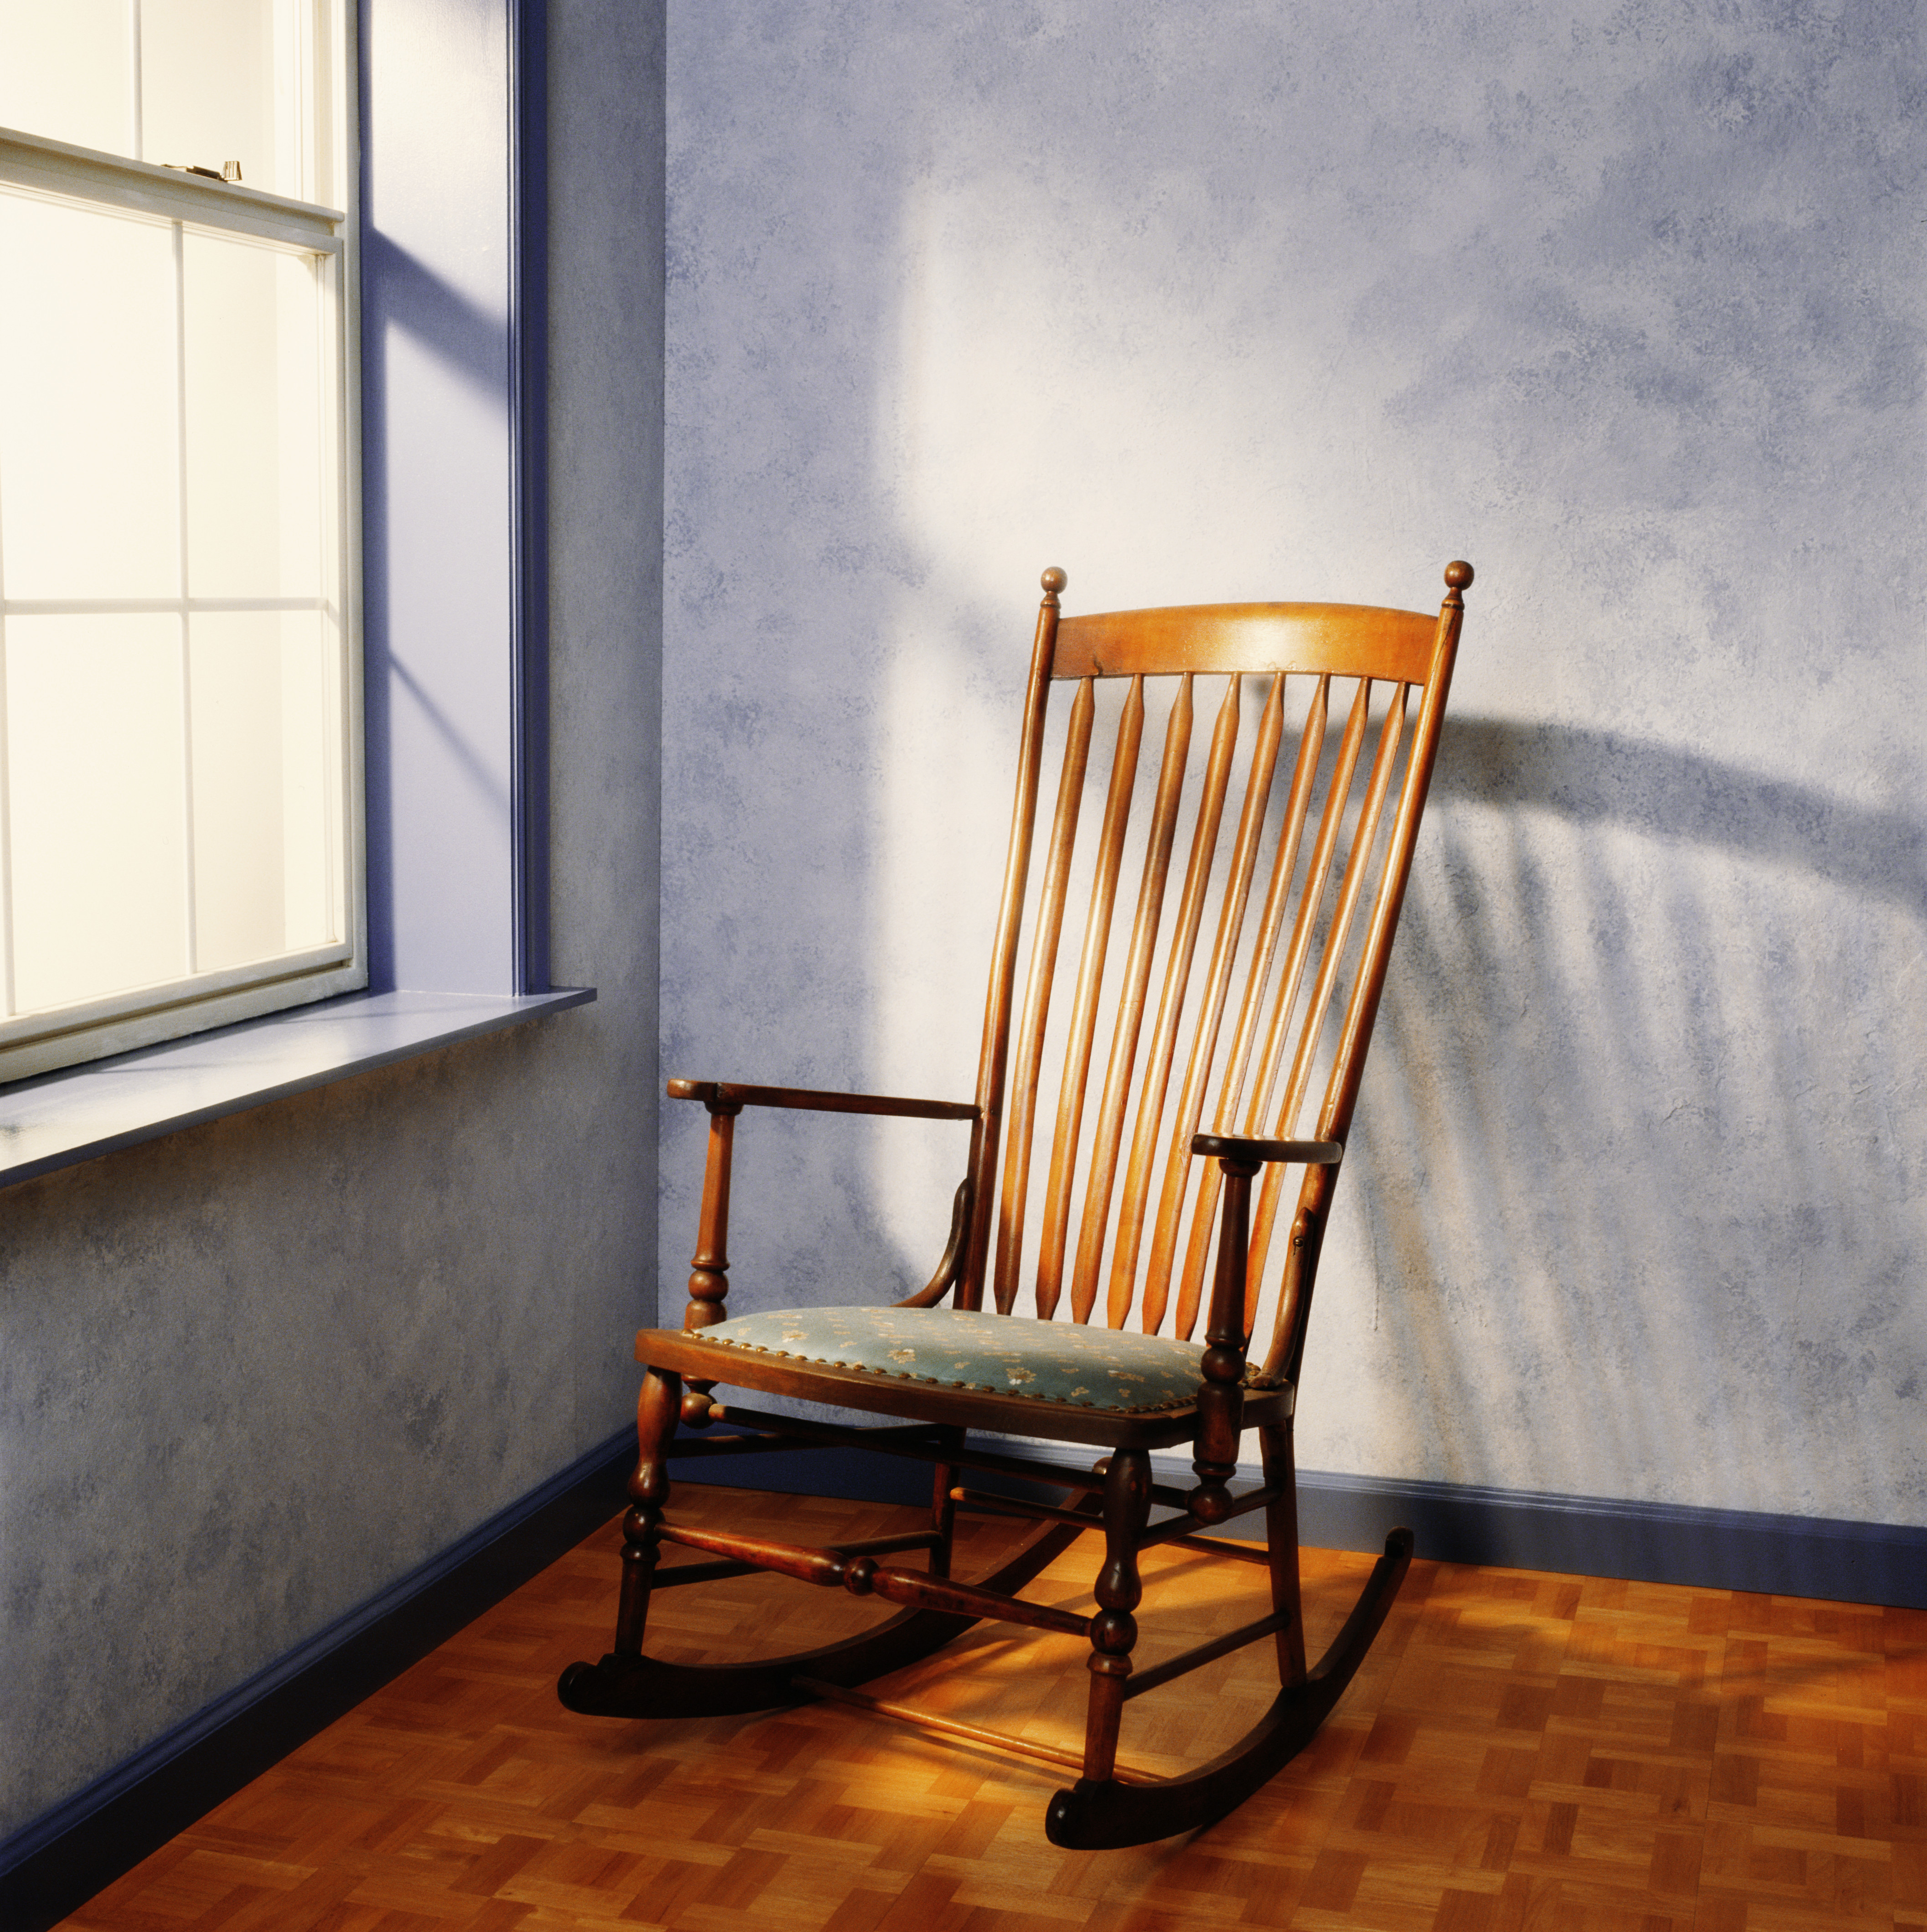 Ein leerer Schaukelstuhl in der Nähe eines Fensters | Quelle: Getty Images